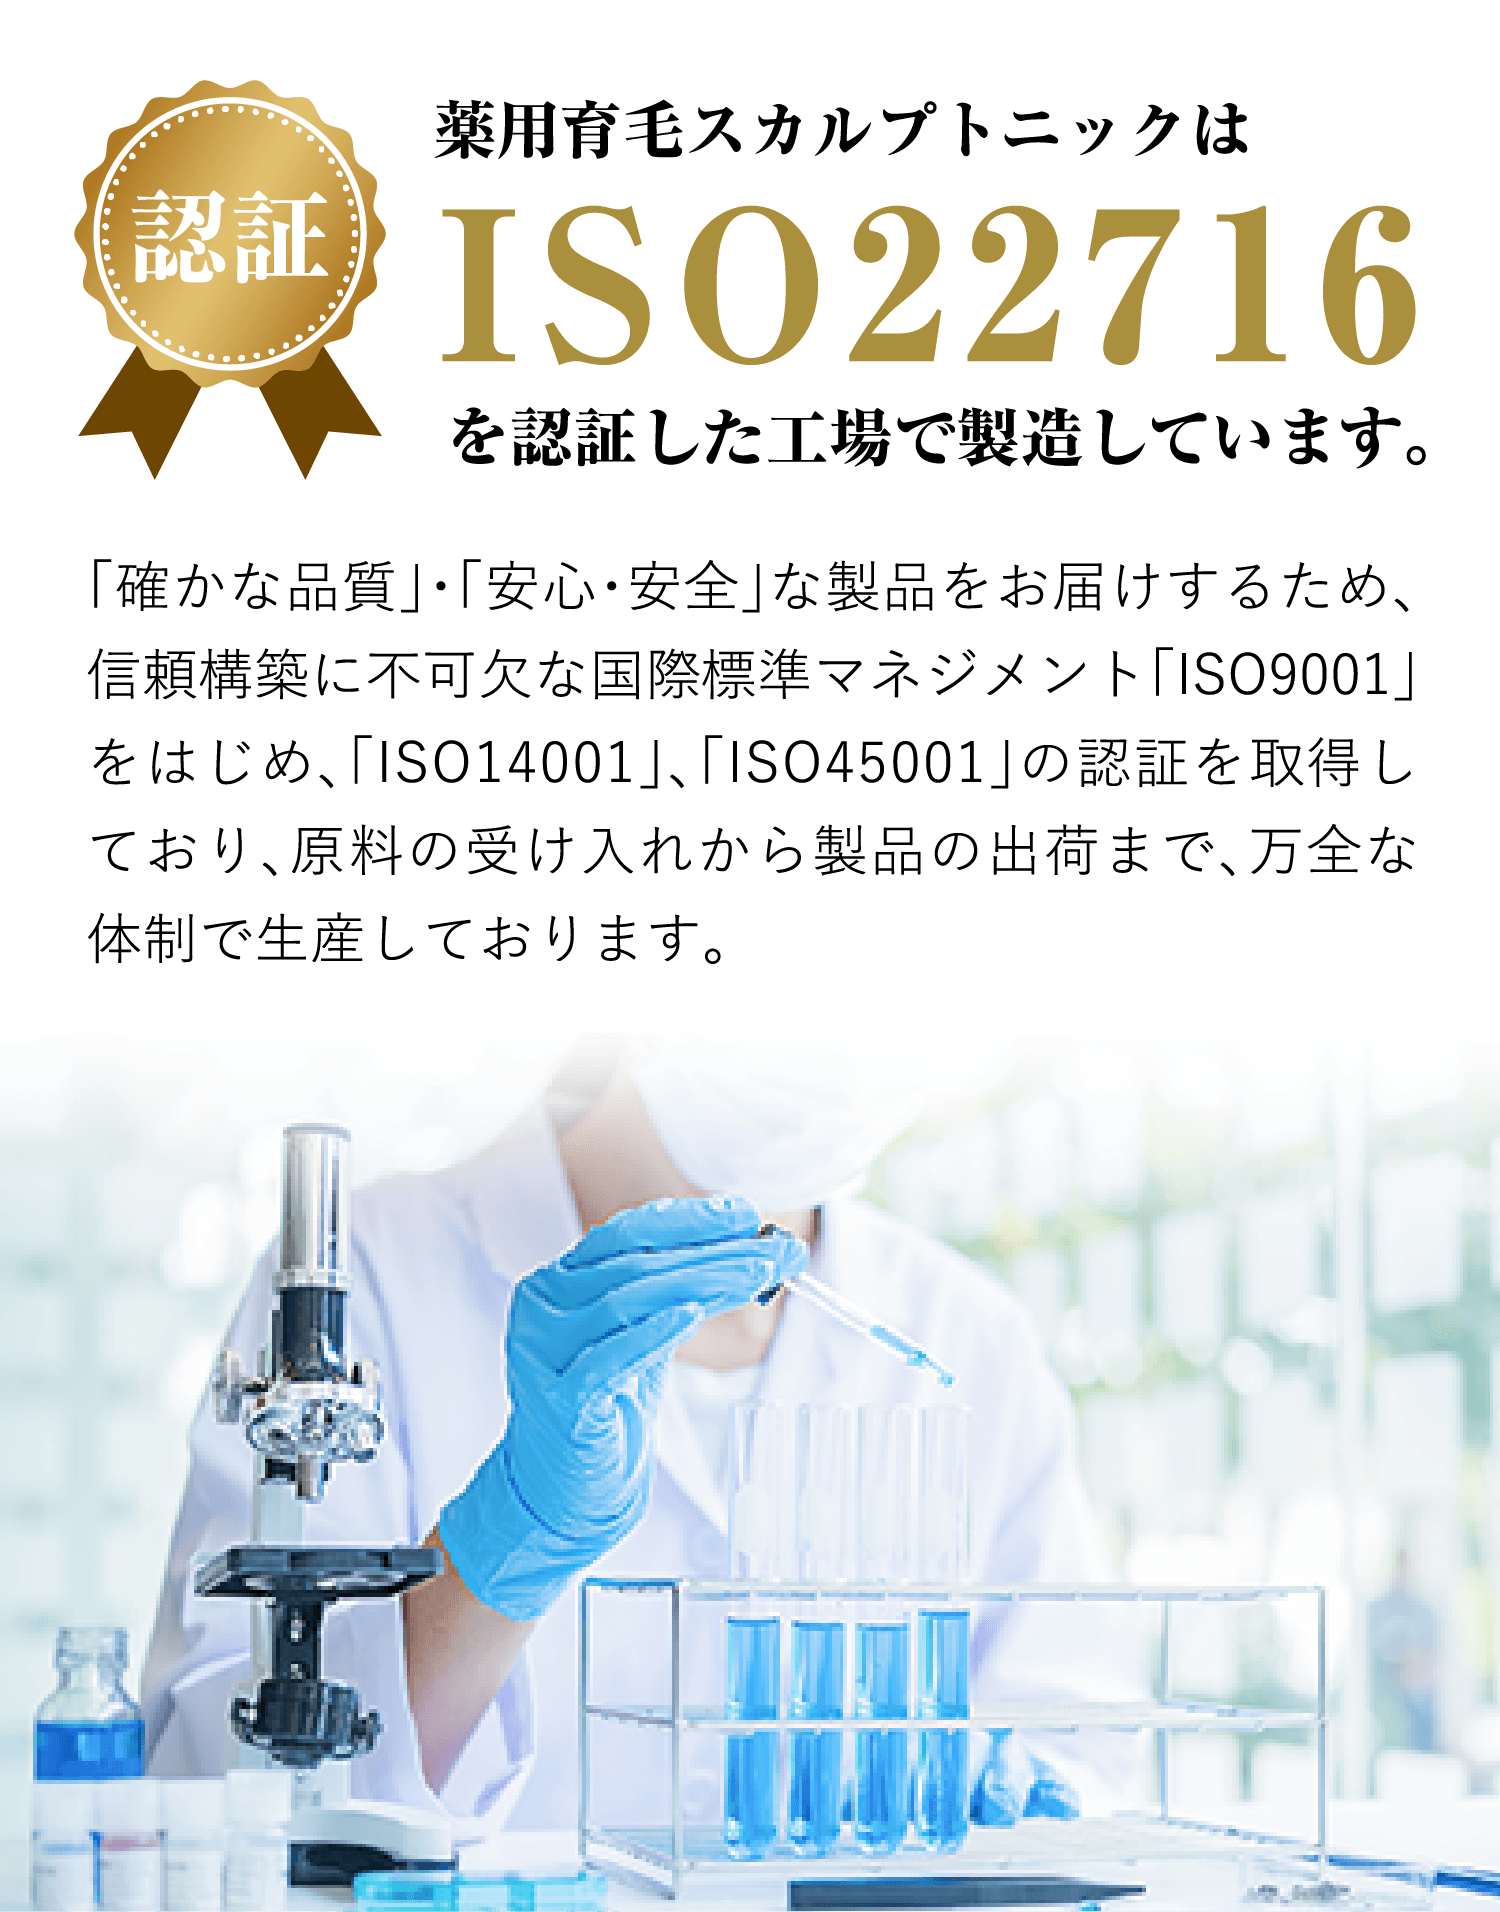 薬用育毛スカルプトニックはISO22716を認証した工場で製造しています。